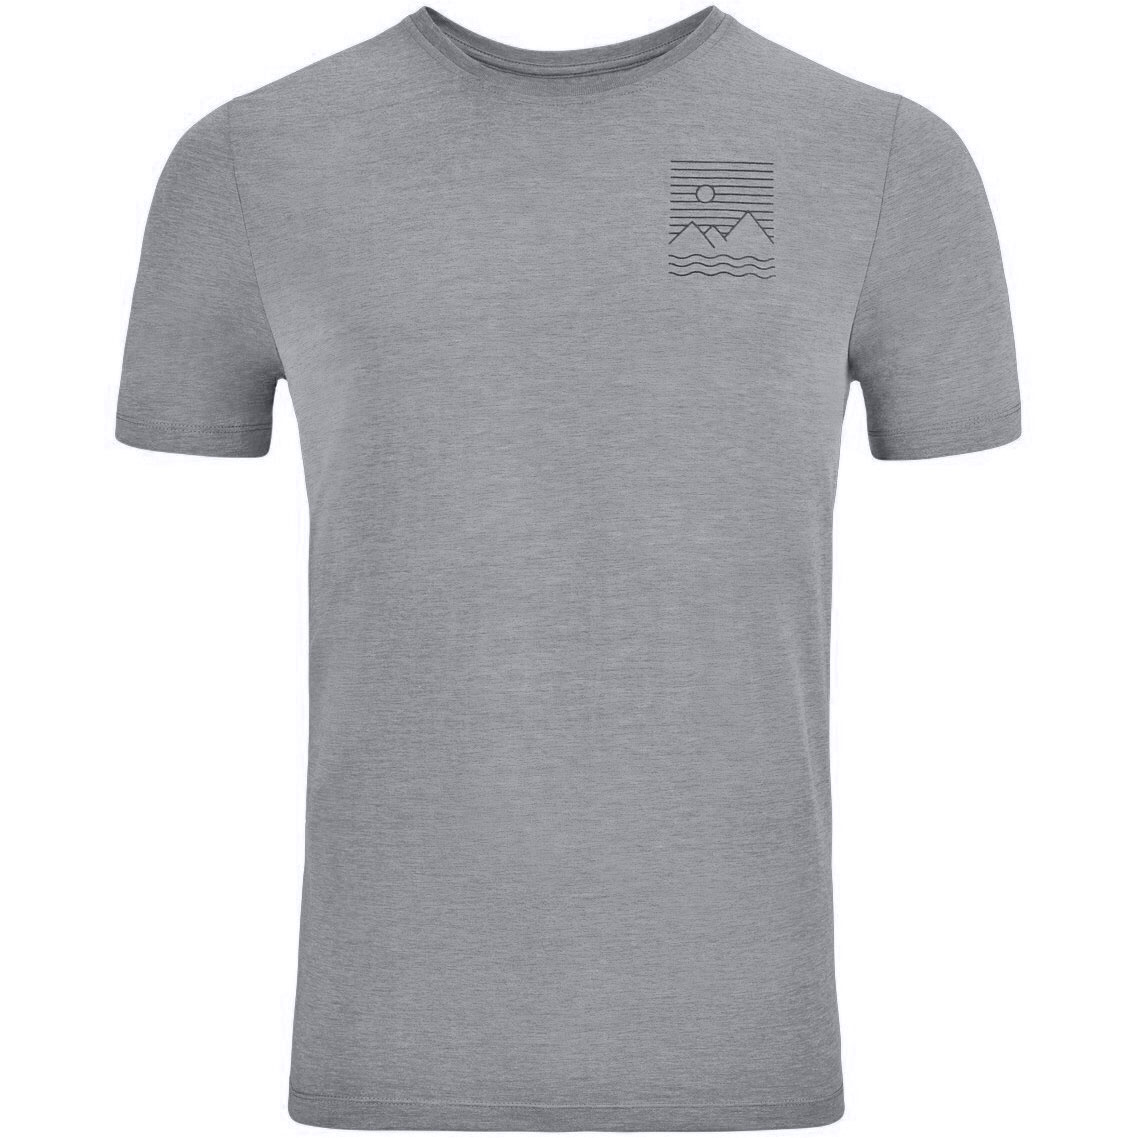 Image of Odlo Ascent 365 Linear T-Shirt Men - grey melange